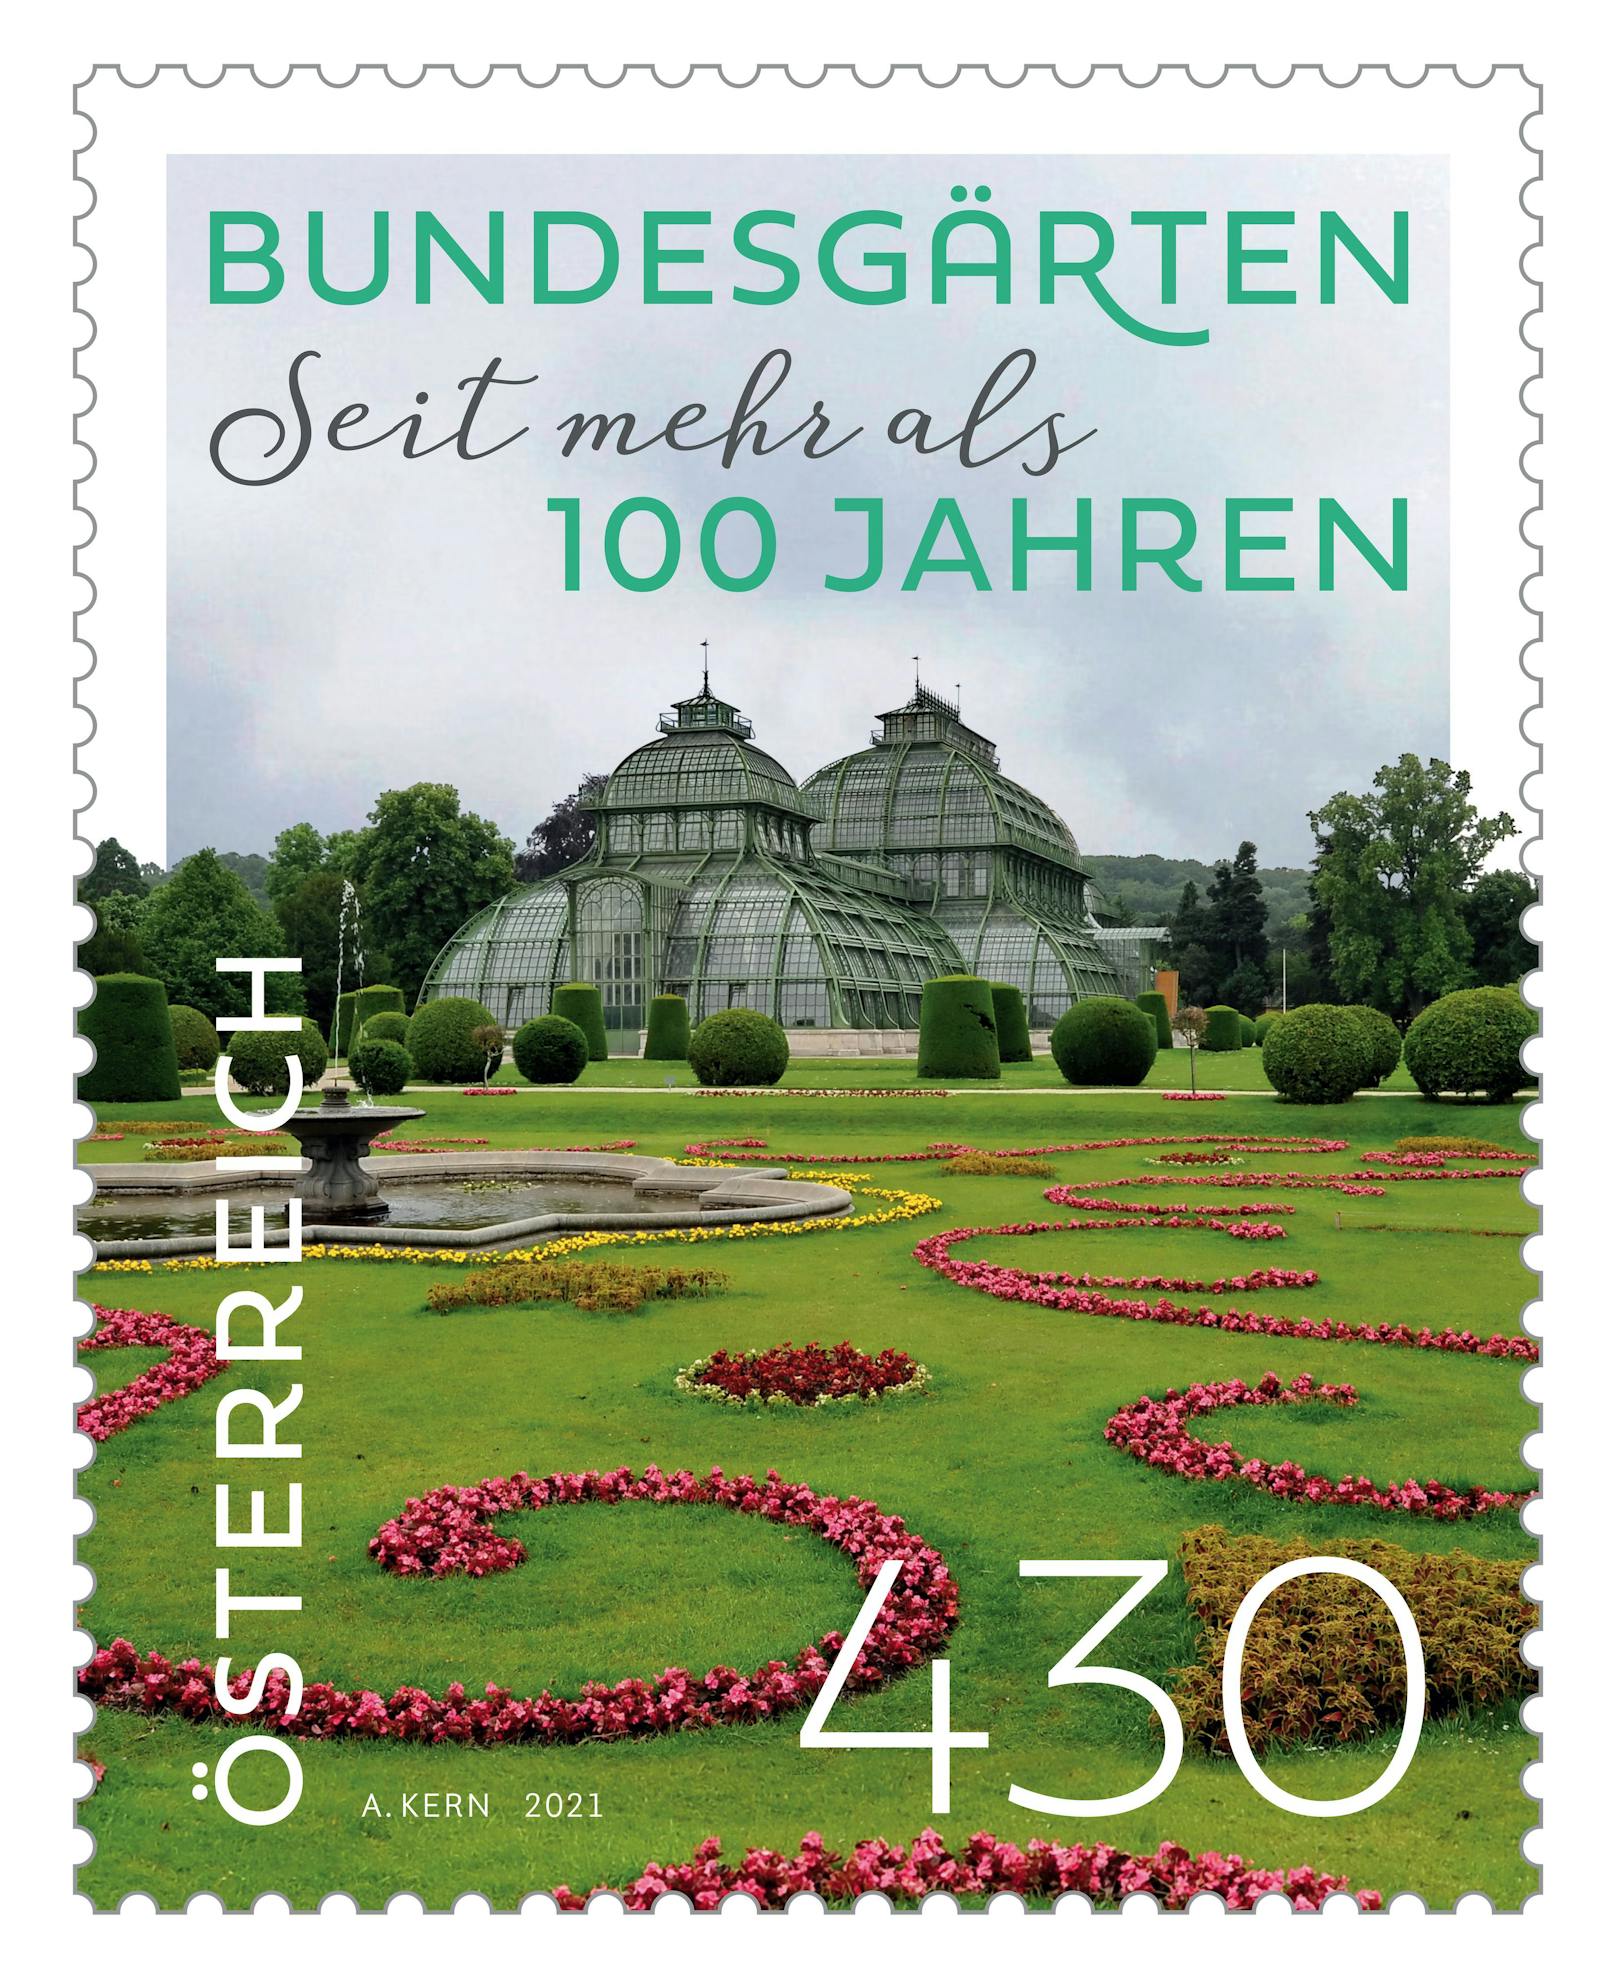 Die neue Sonderbriefmarke der sterreichischen Post würdigt das mehr als 100-jährige Bestehen der Österreichischen Bundesgärten. Veredelt mit einem eigenen Duftlack, riecht die Oberfläche der Briefmarke nach Rosen.